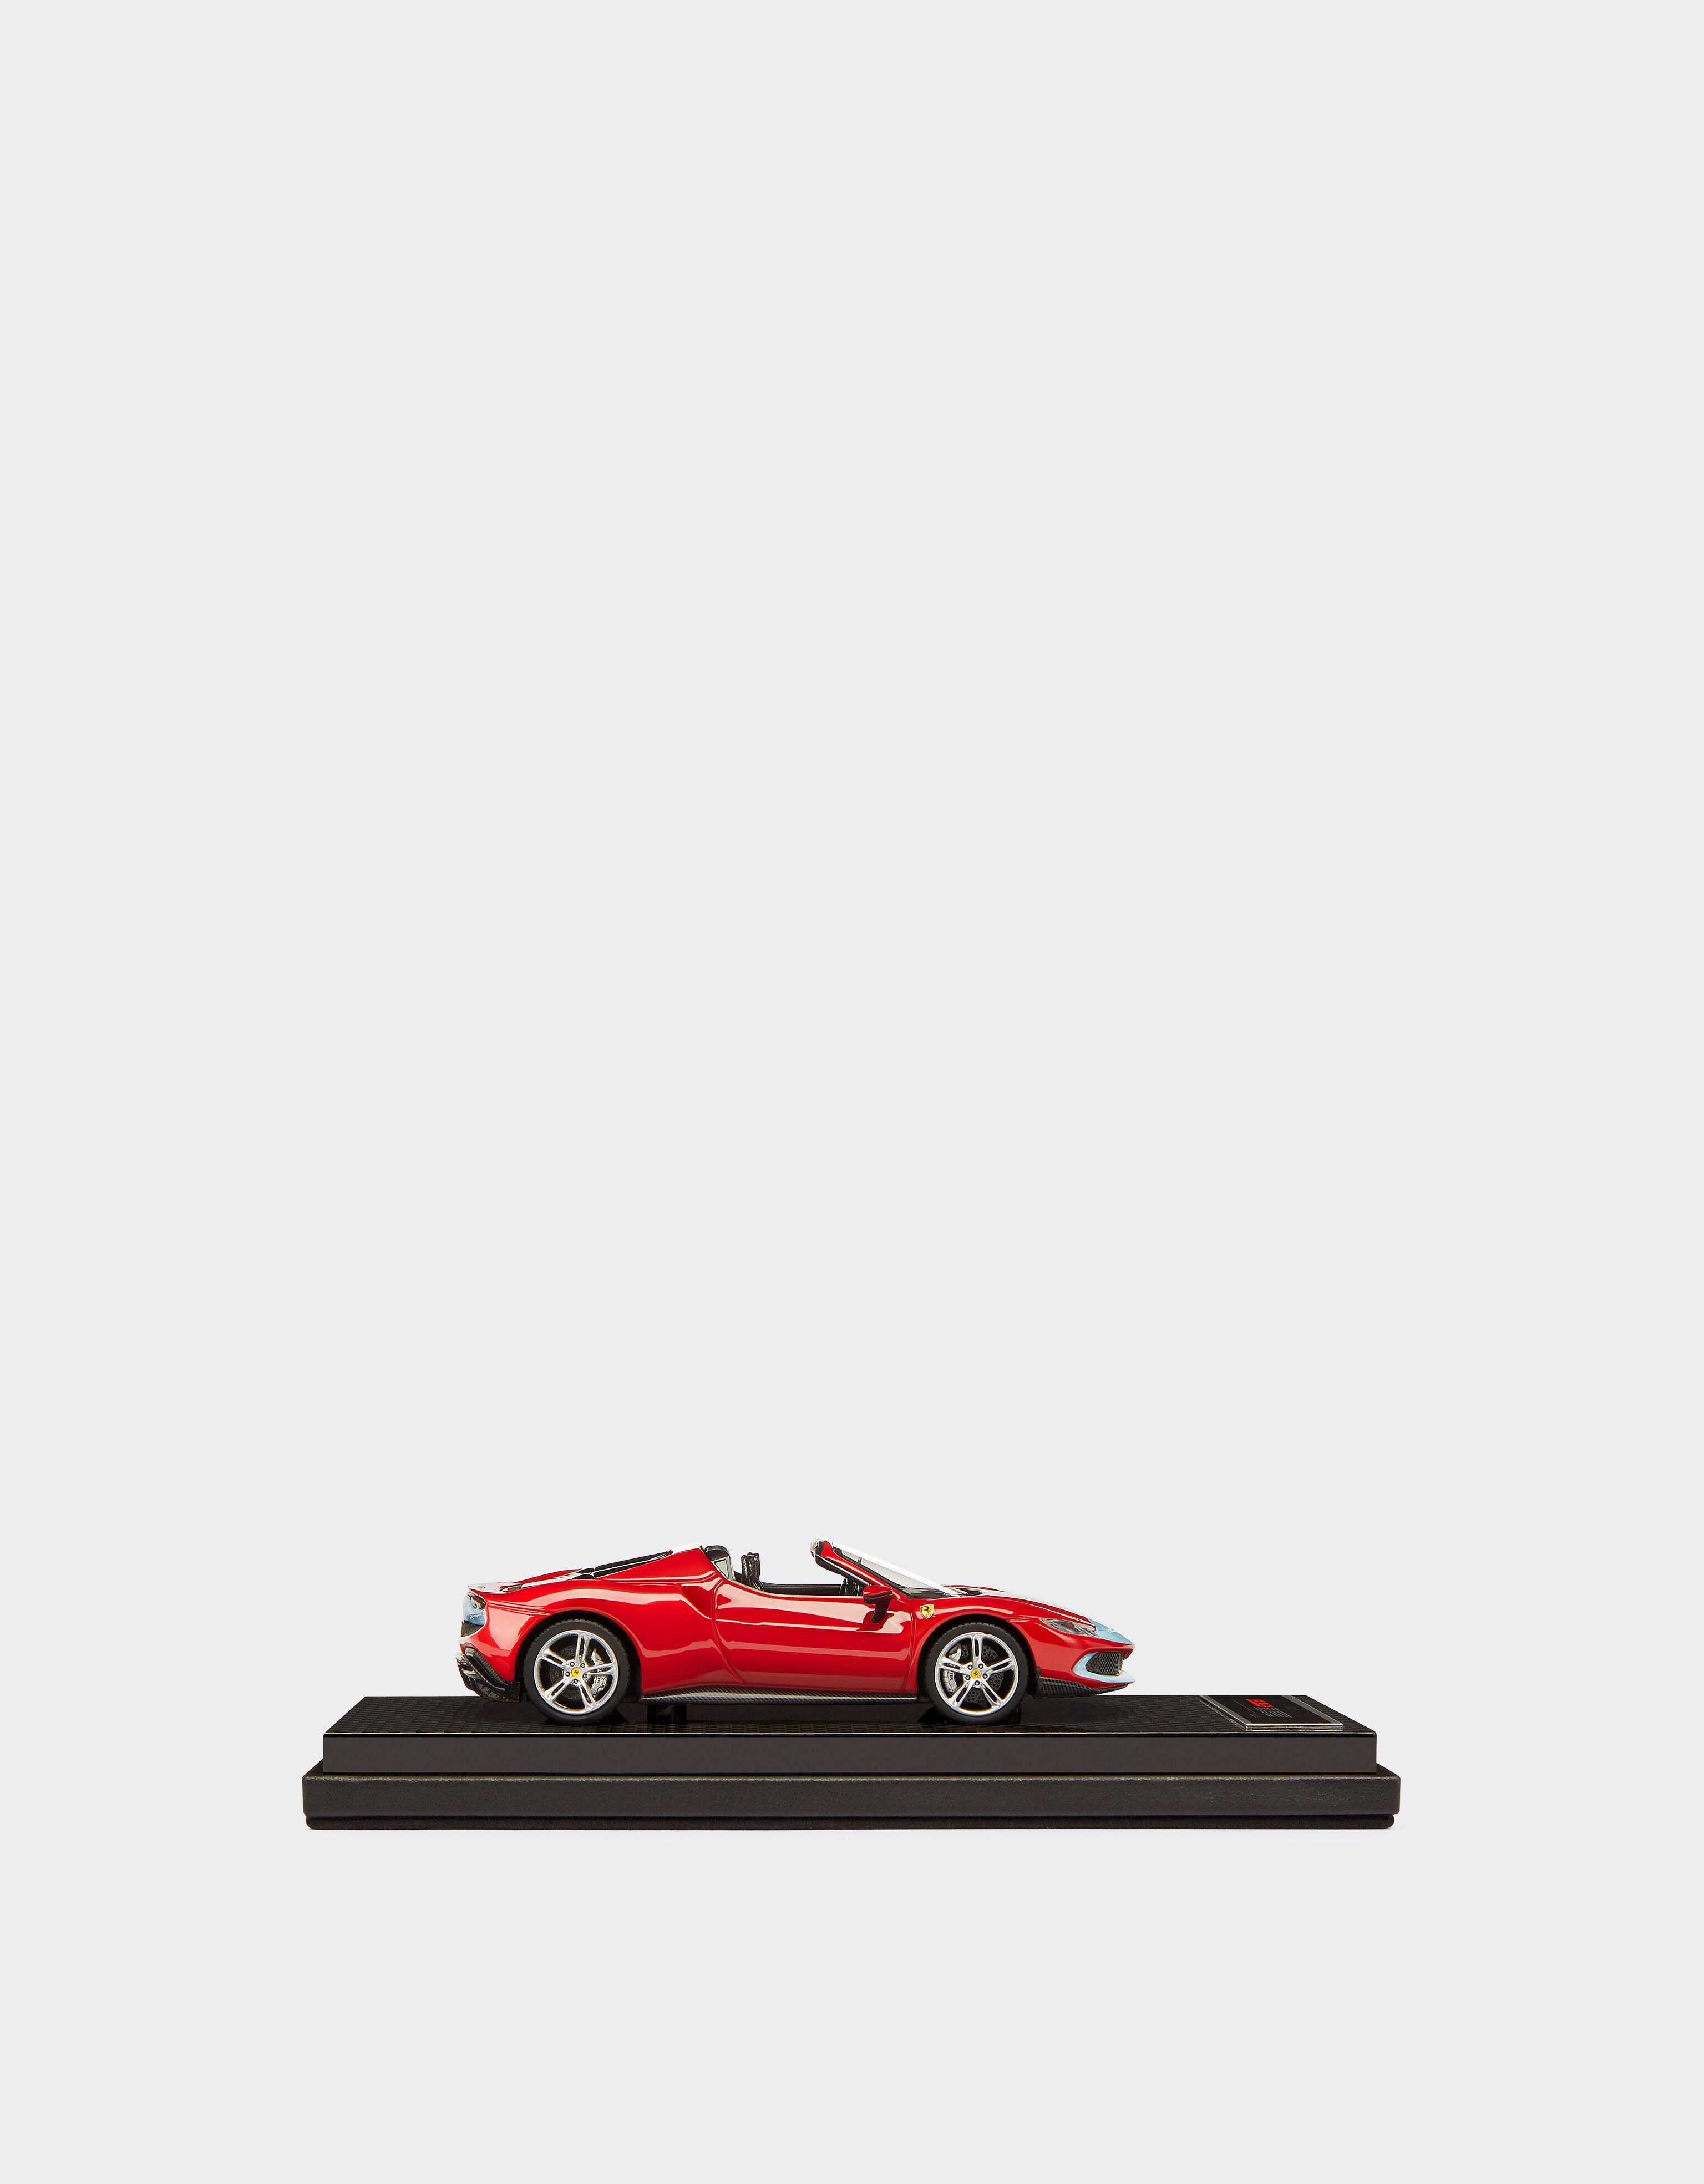 Ferrari Ferrari 296 GTS 1:43 scale model Rosso Corsa F0883f